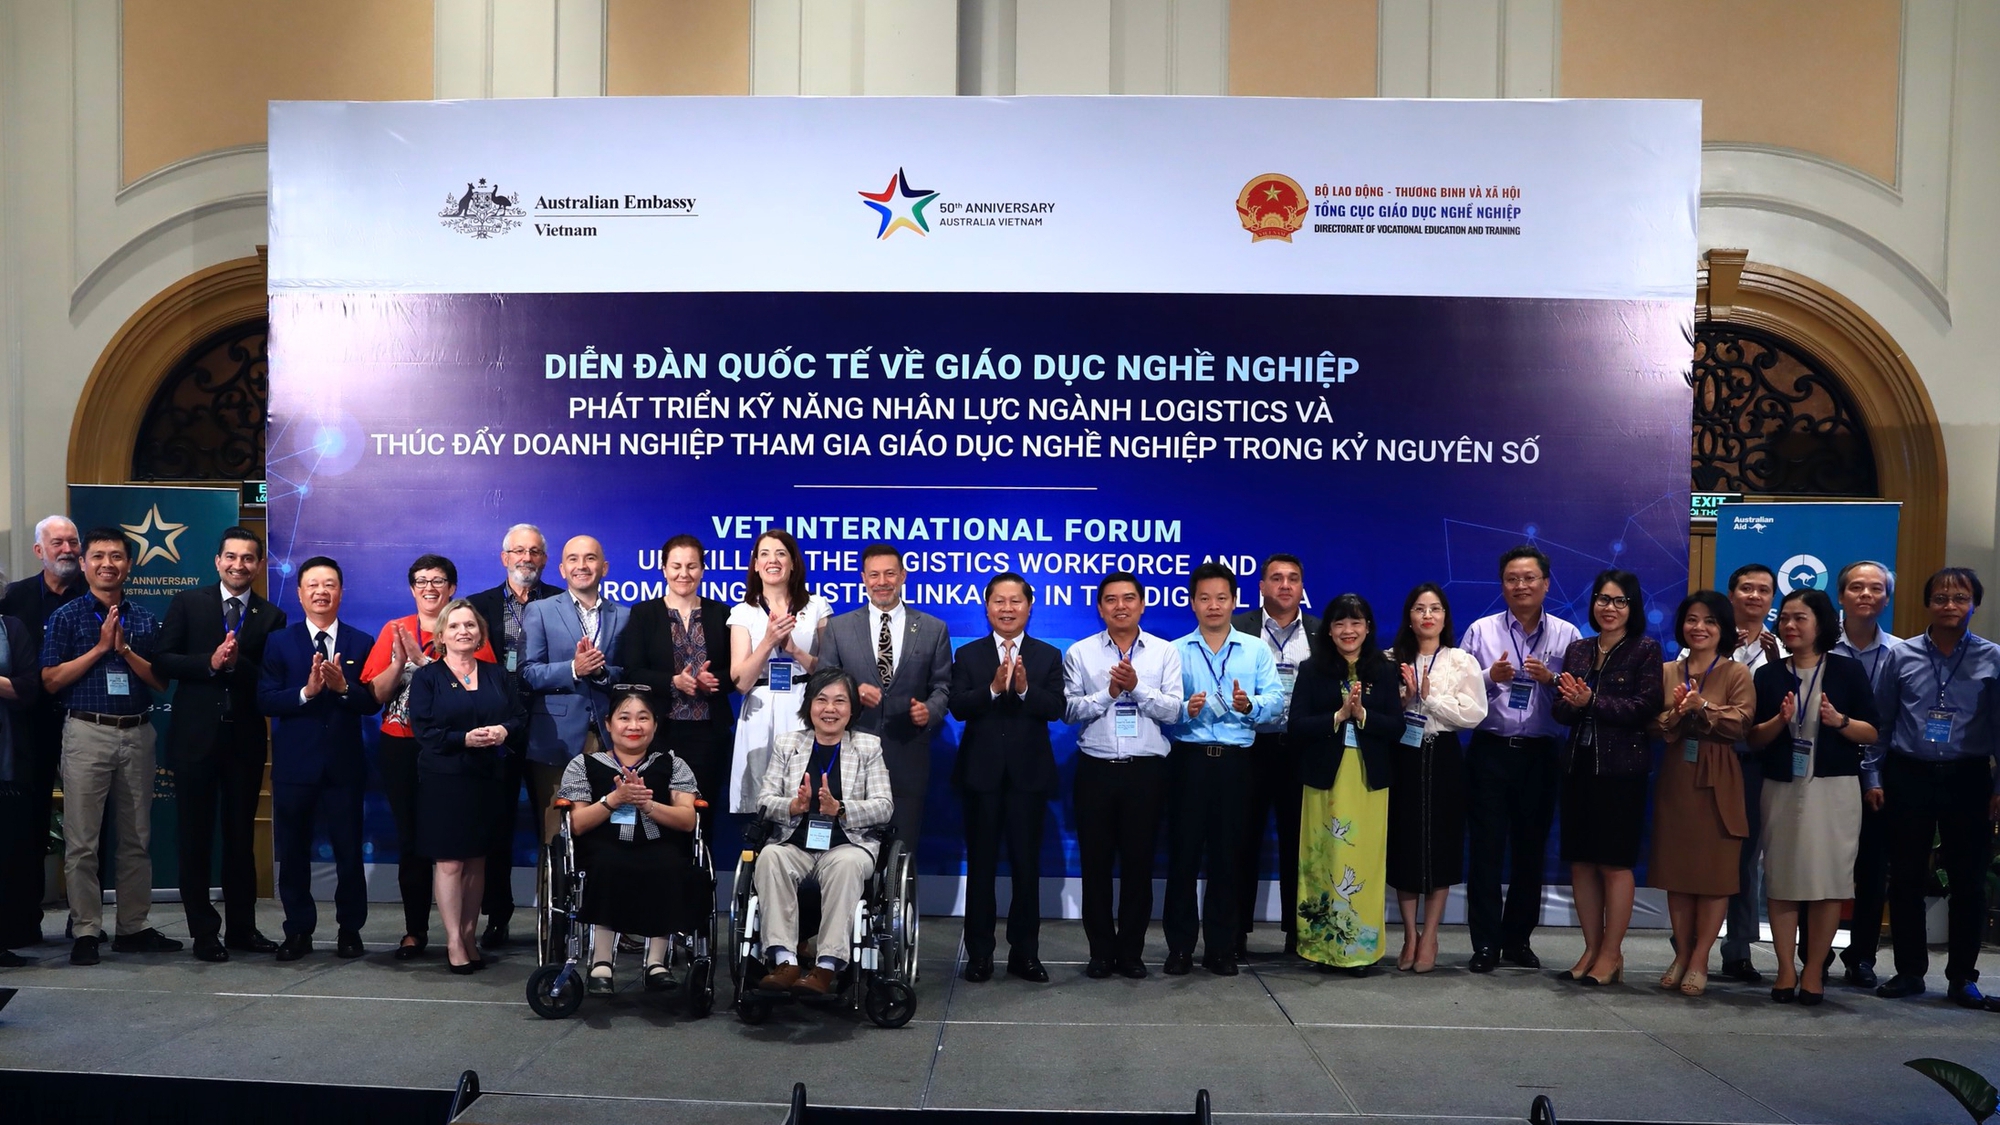 Úc giúp Việt Nam nâng cao chất lượng đào tạo nhân lực ngành logistics - Ảnh 3.